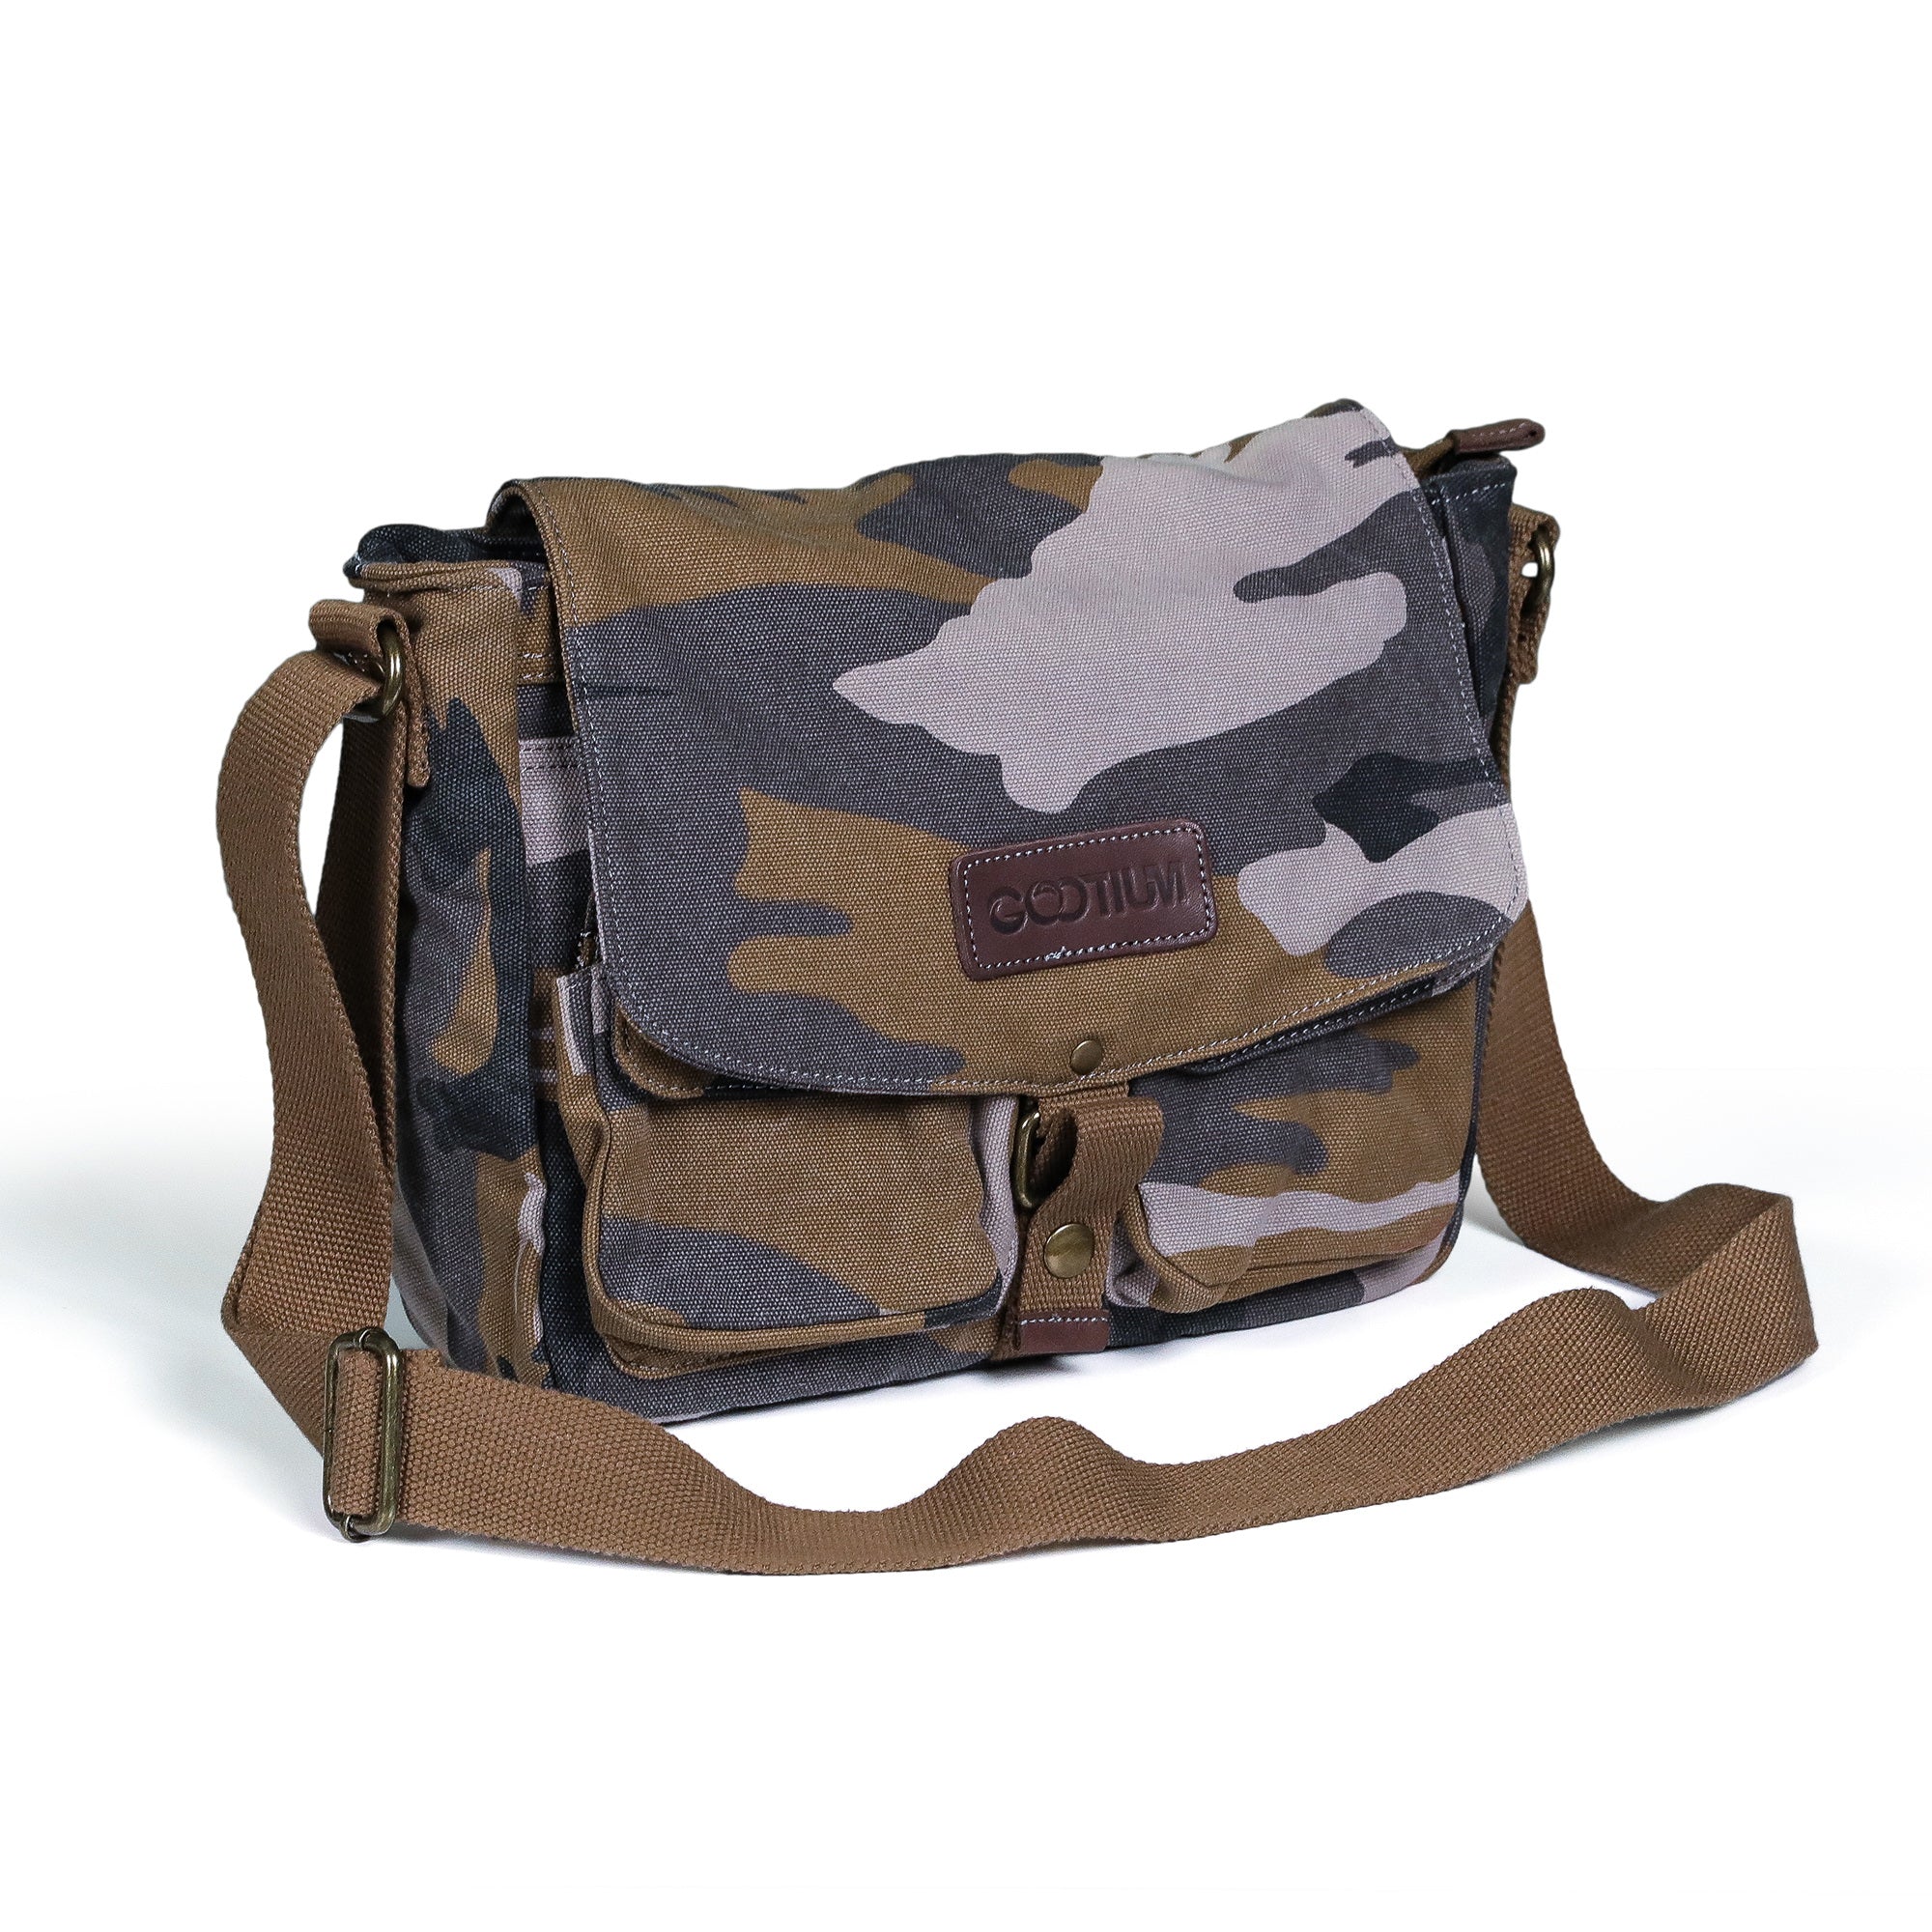 Gootium Canvas Messenger Bag - Vintage Shoulder Bag Frayed Style Boho Purse